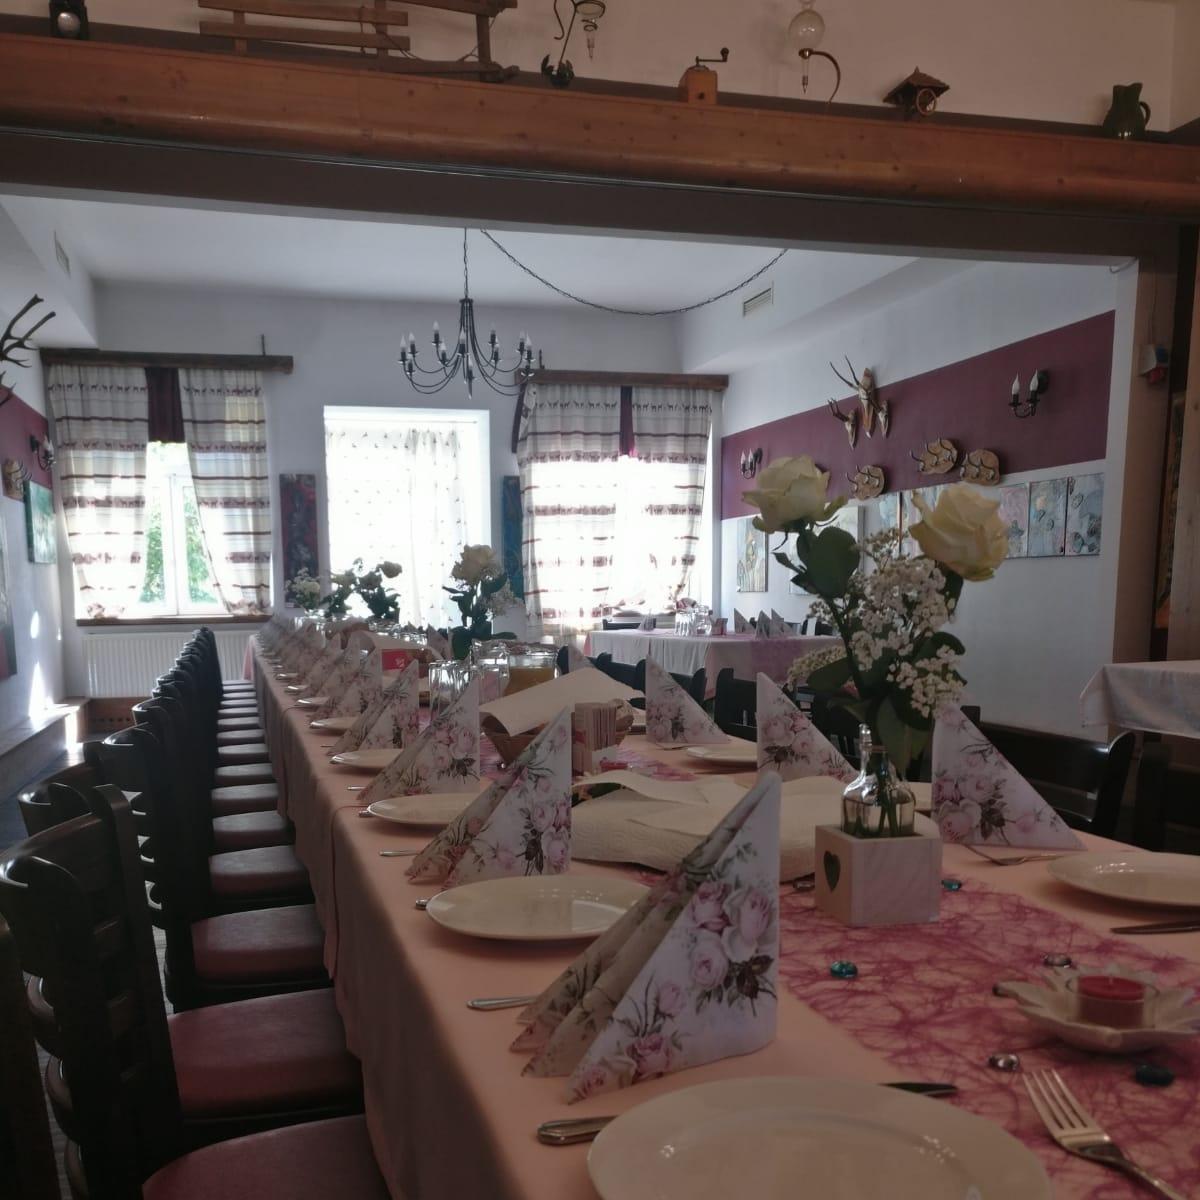 Restaurant "Kastaniengarten" in Schwechat